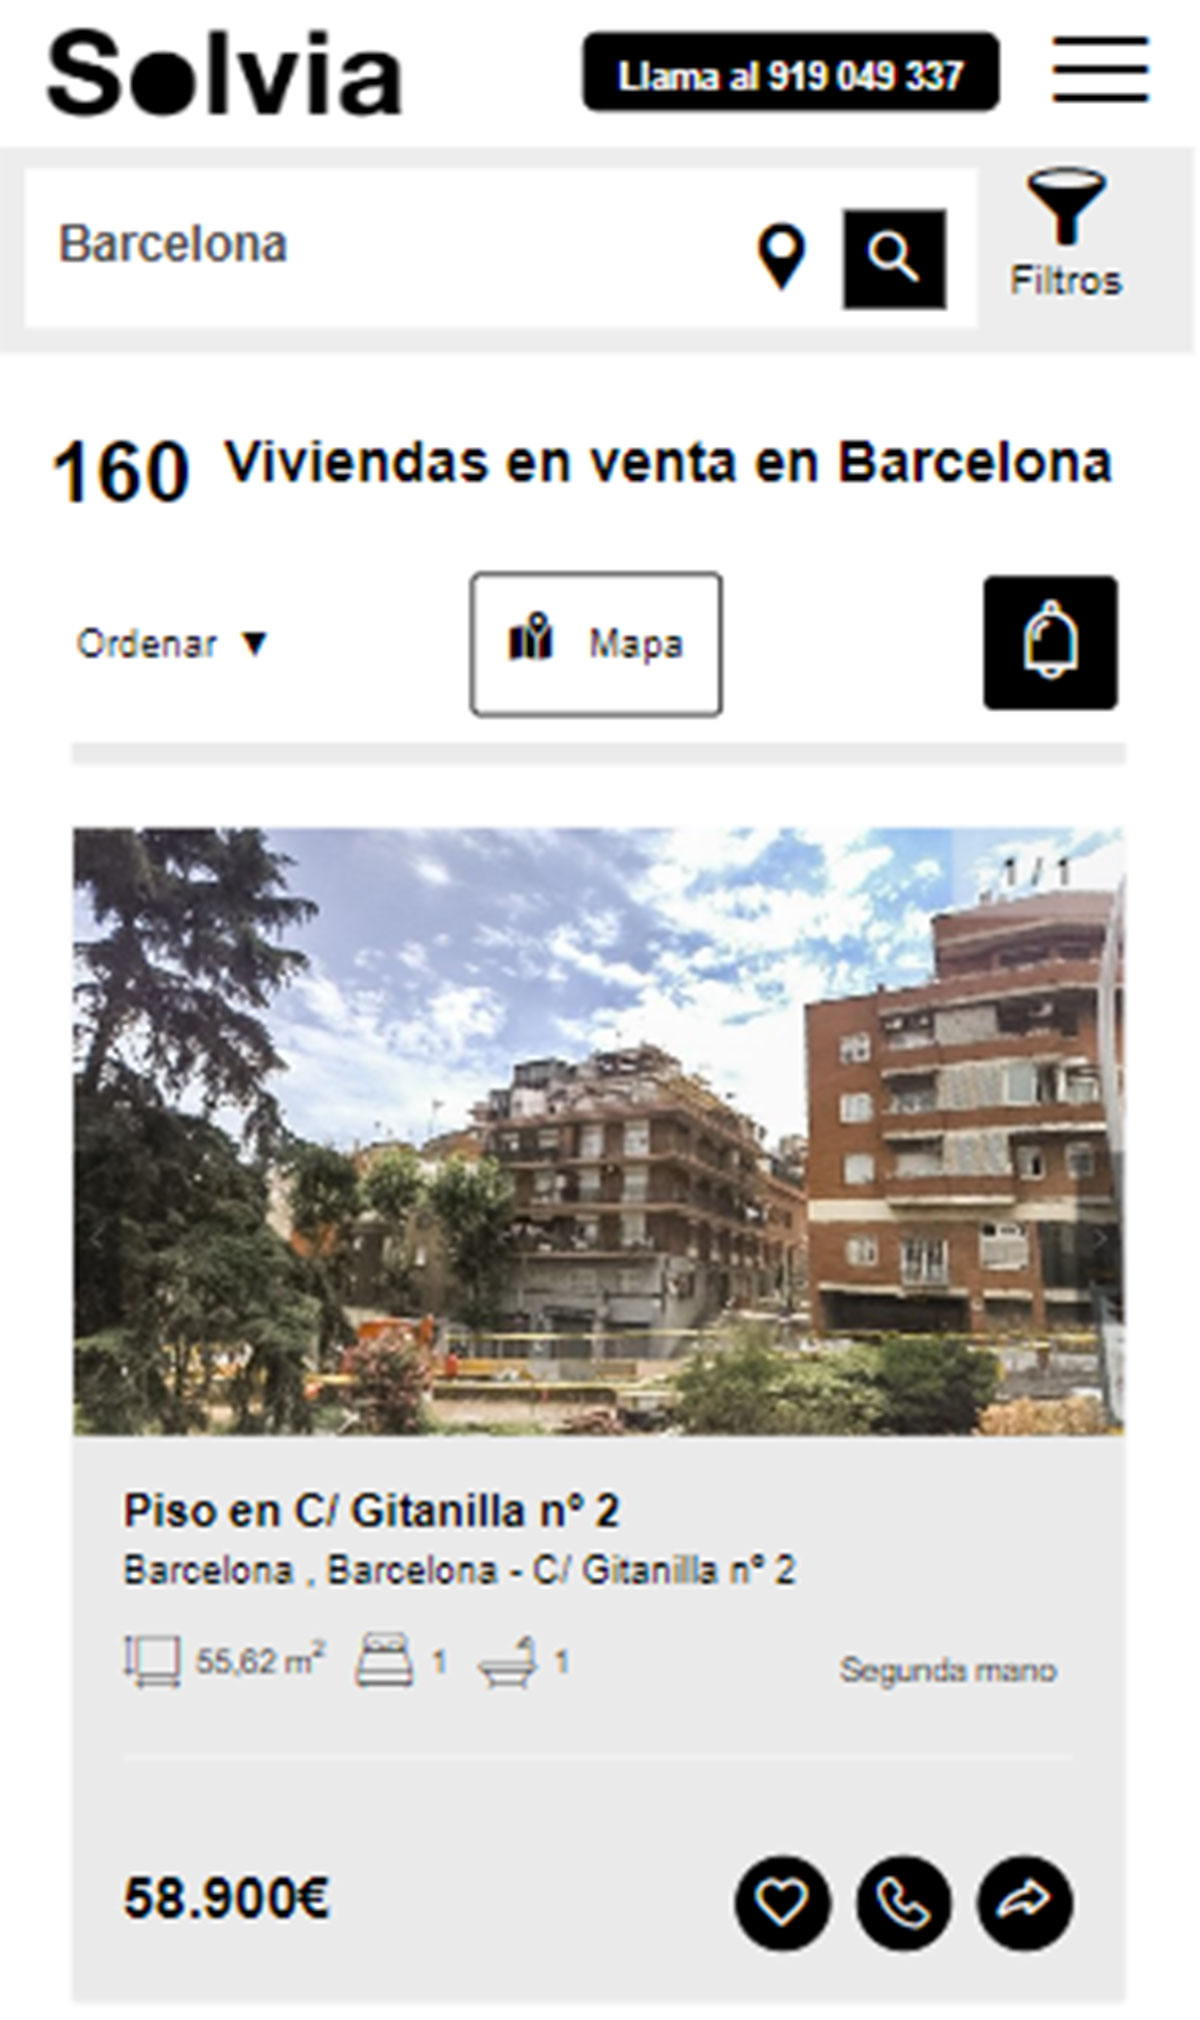 Piso en la ciudad de Barcelona por 58.900 euros